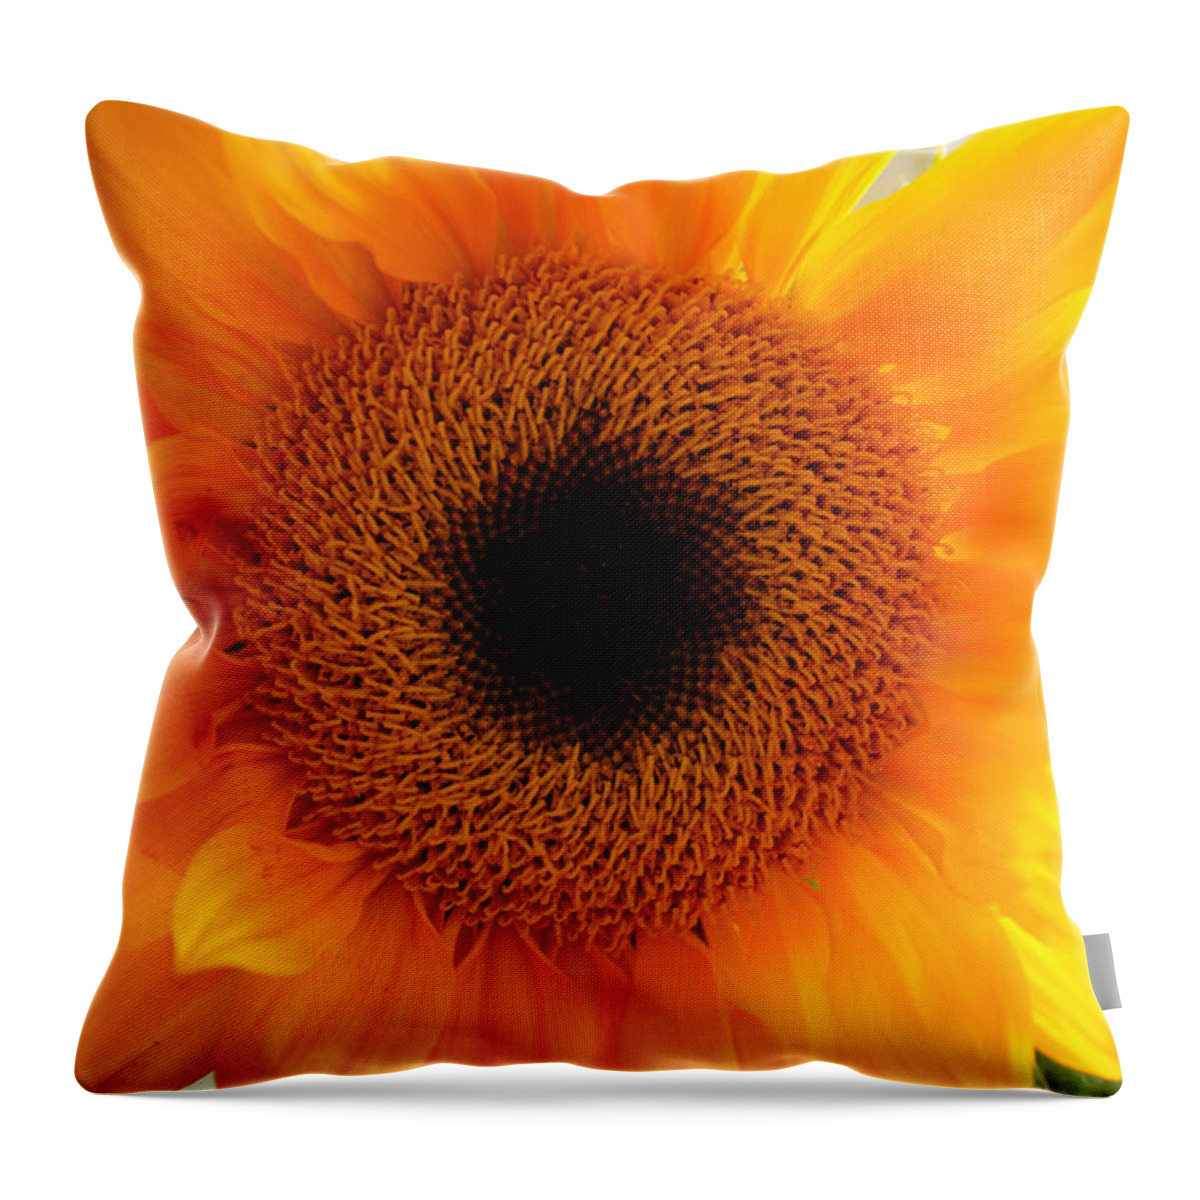 Sunflower Throw Pillow featuring the photograph Golden Sunshine by Lynn Jackson